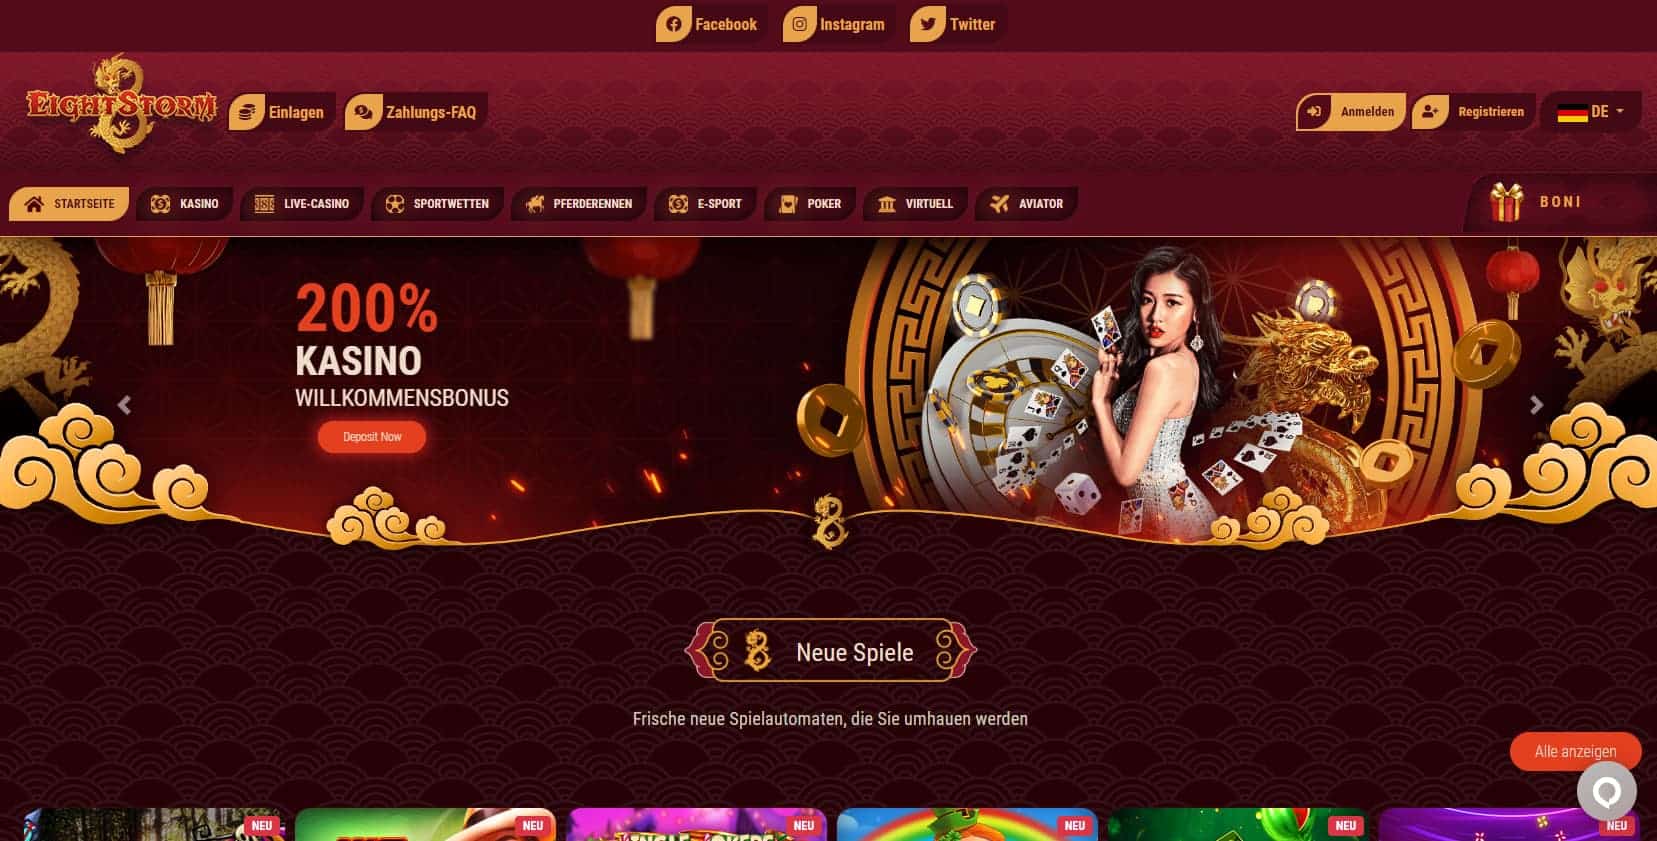 Eightstorm Online Casino